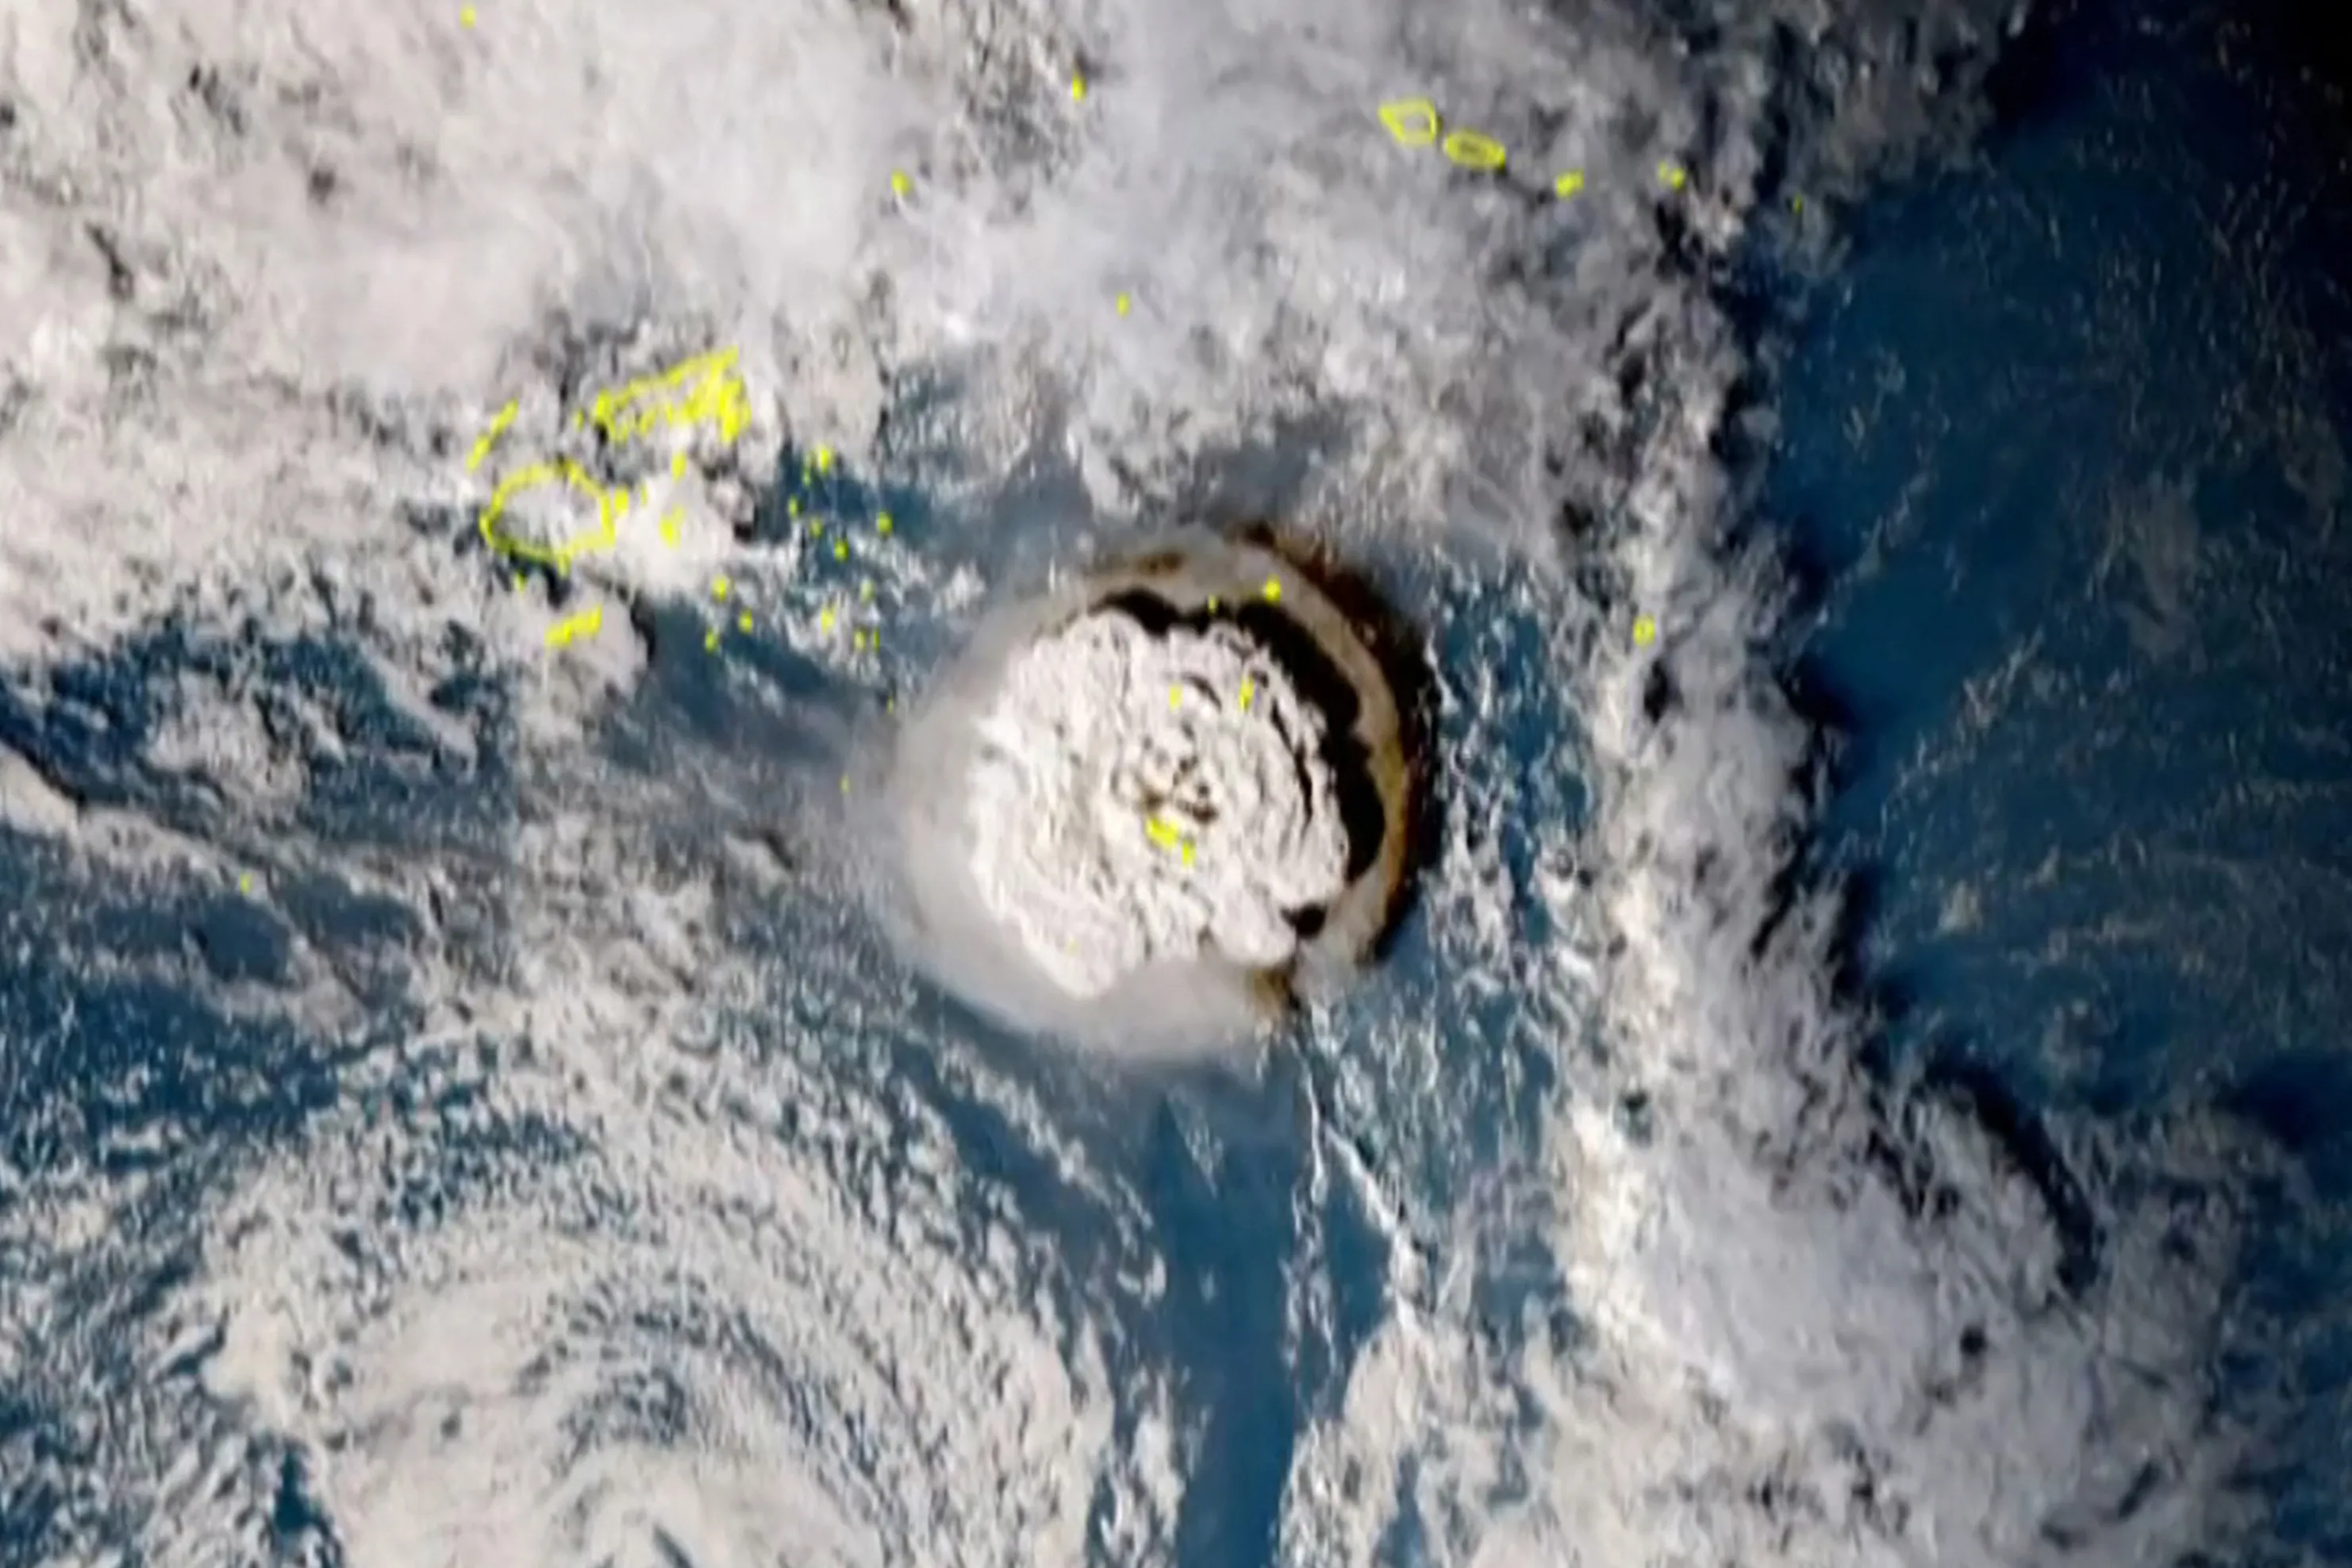 Imagens de satélite mostram erupção de vulcão submarino em Tonga